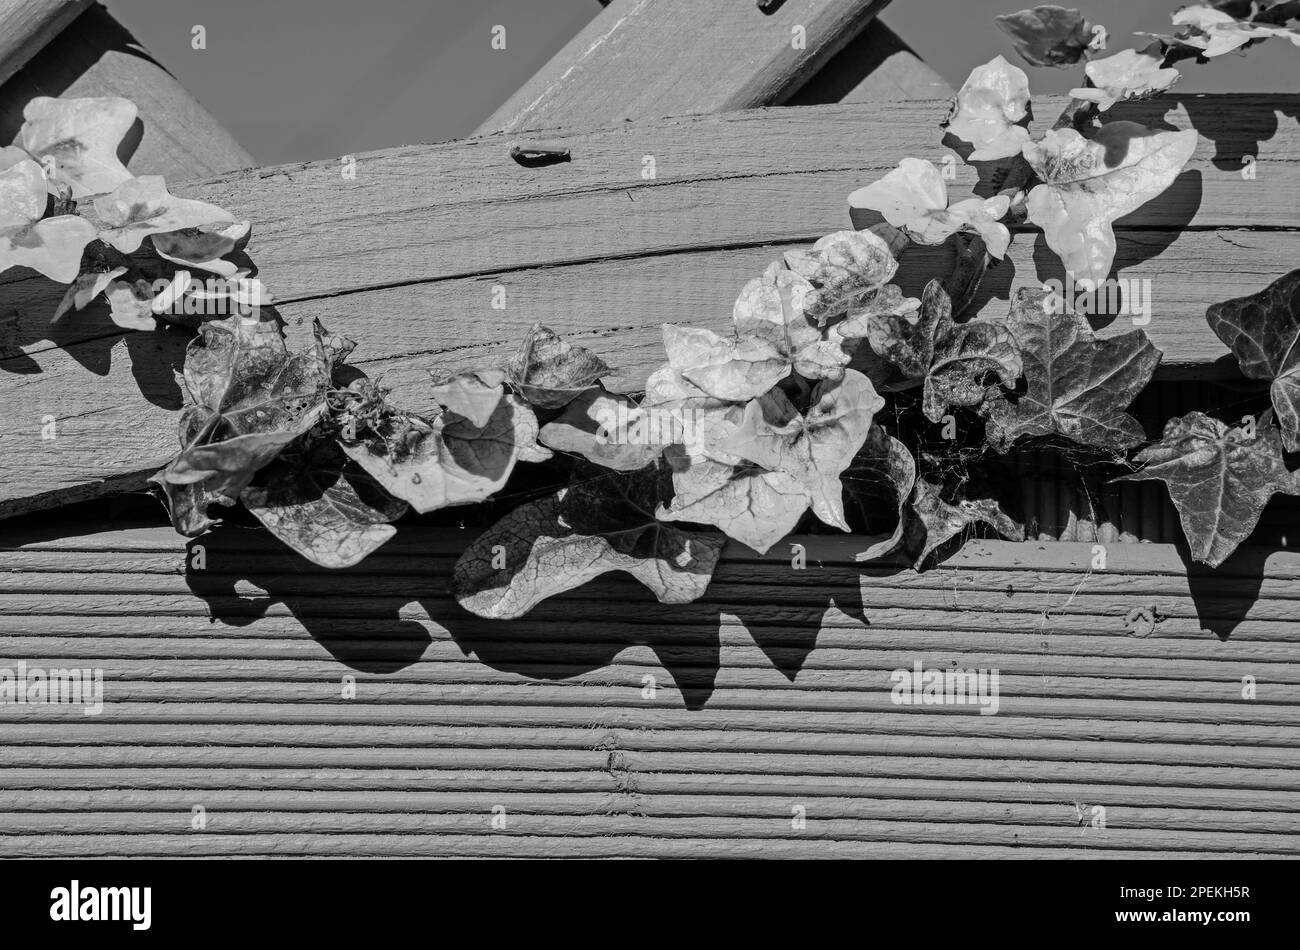 Un cliché monochromatique d'une bande de lierre en lambeaux à travers un treillis de jardin en bois. Abstrait et triste. Banque D'Images